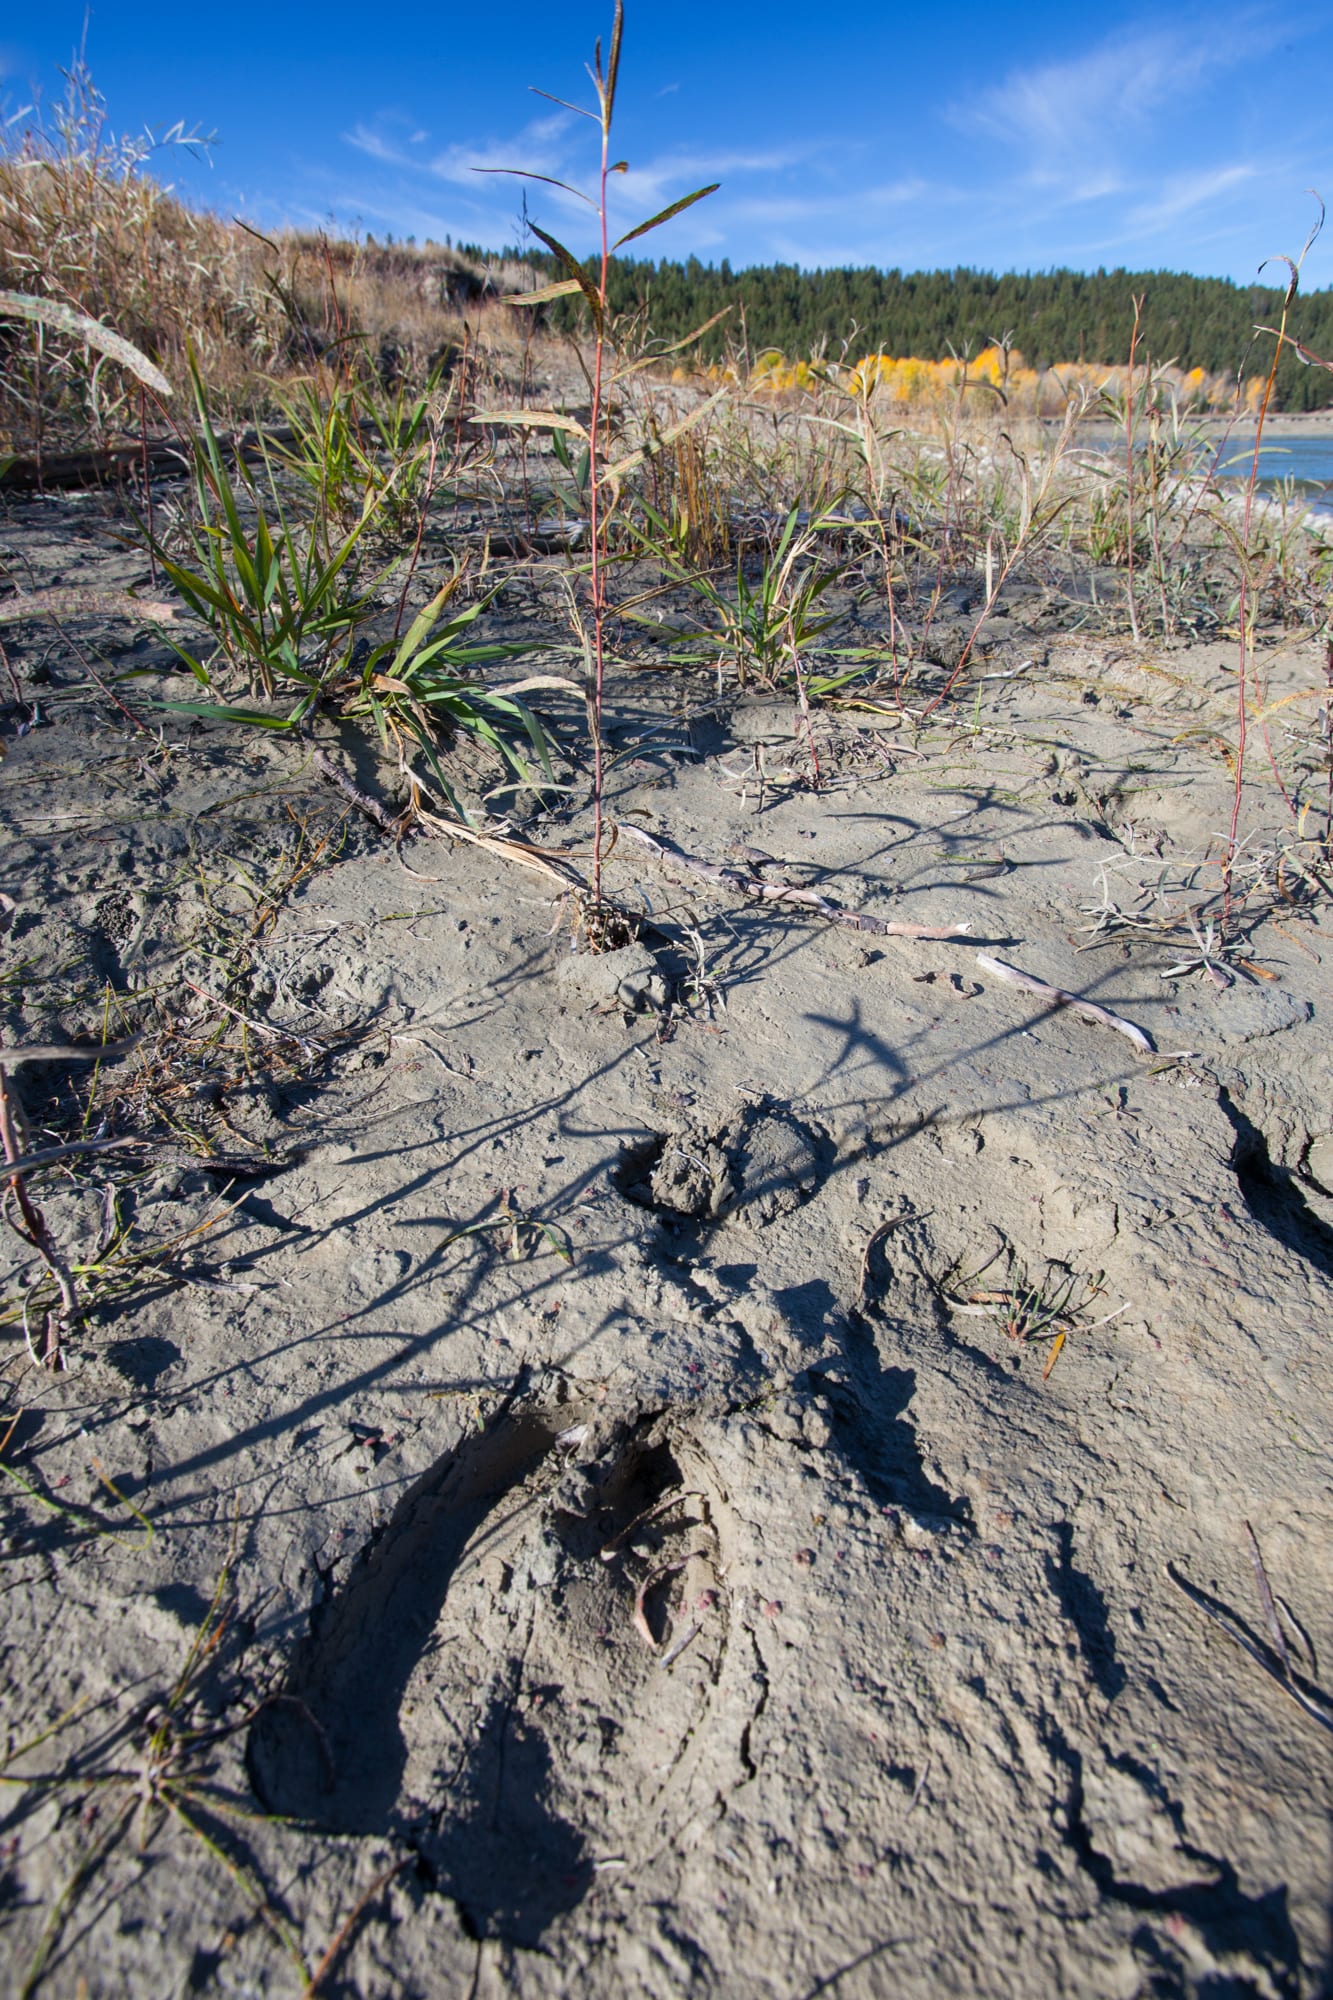 Deer hoof print in the mud along the lakeshore